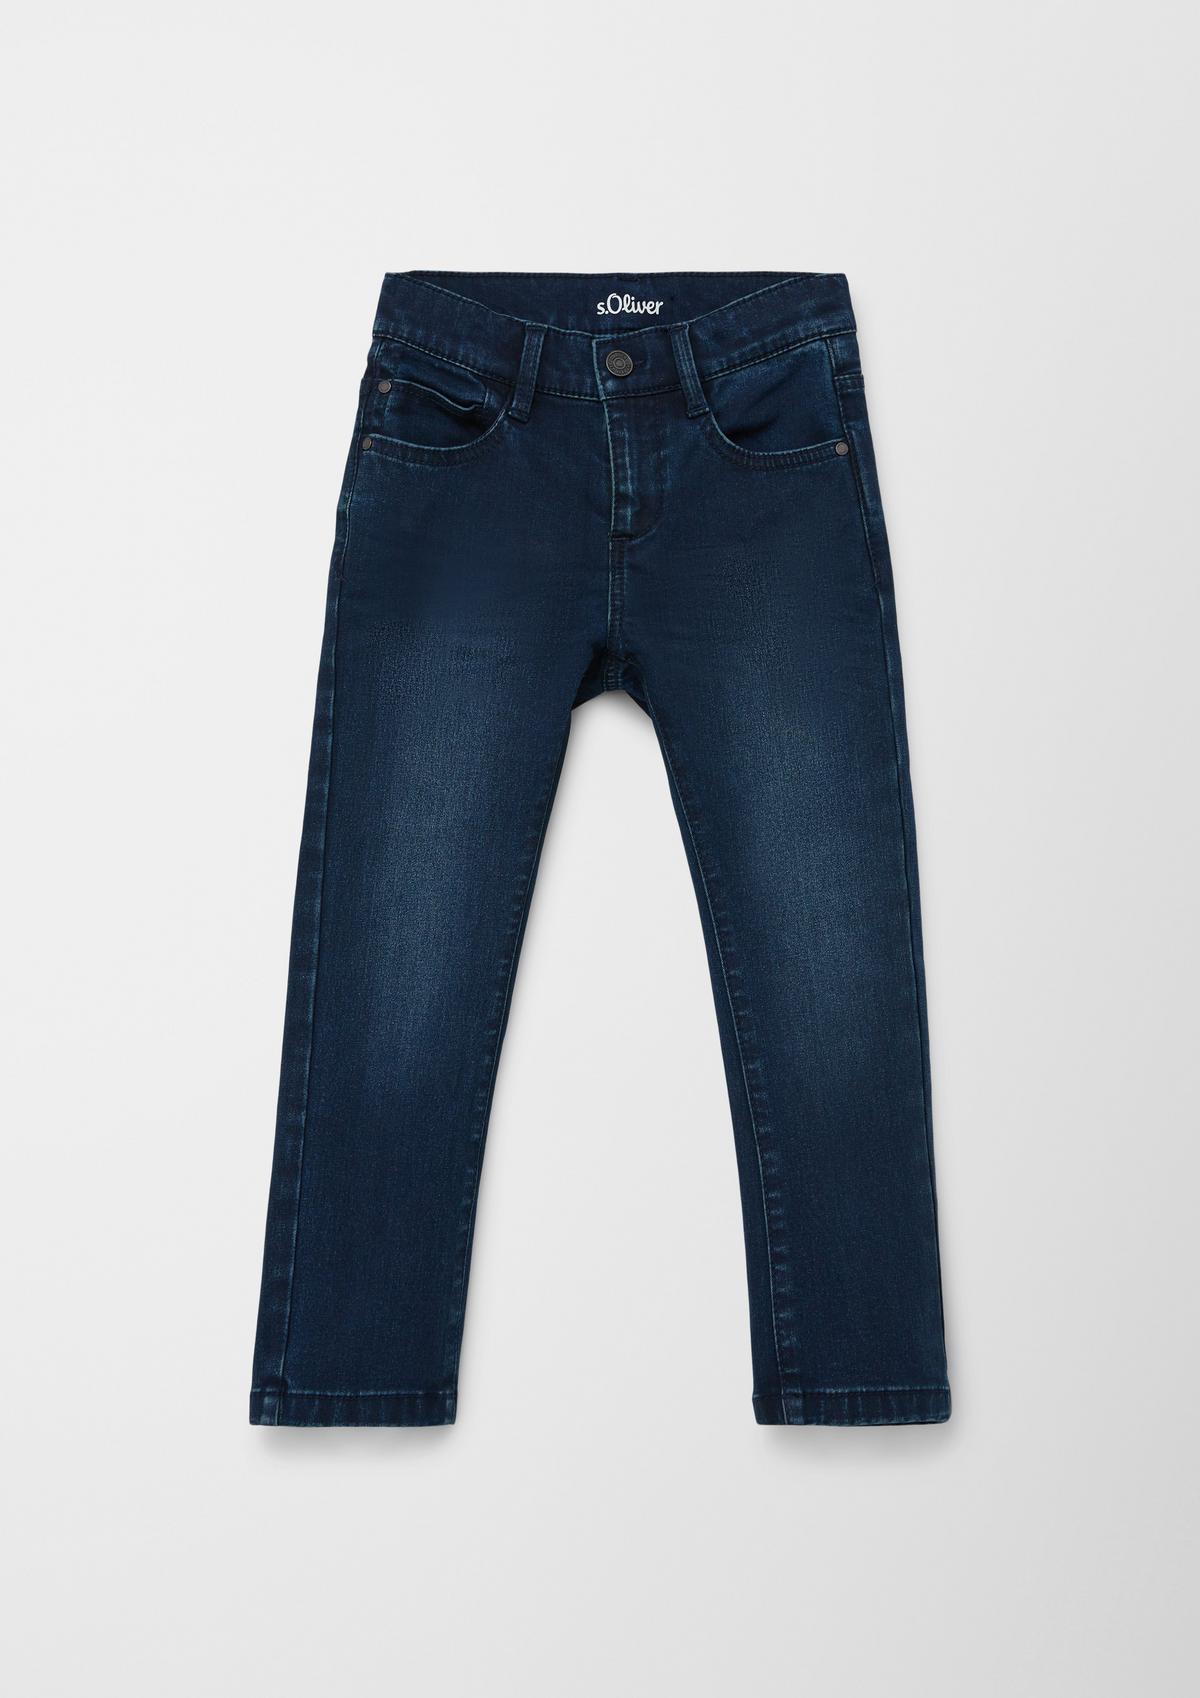 Jeans Pelle / Regular Fit / Mid Rise / Straight Leg / Used-Look